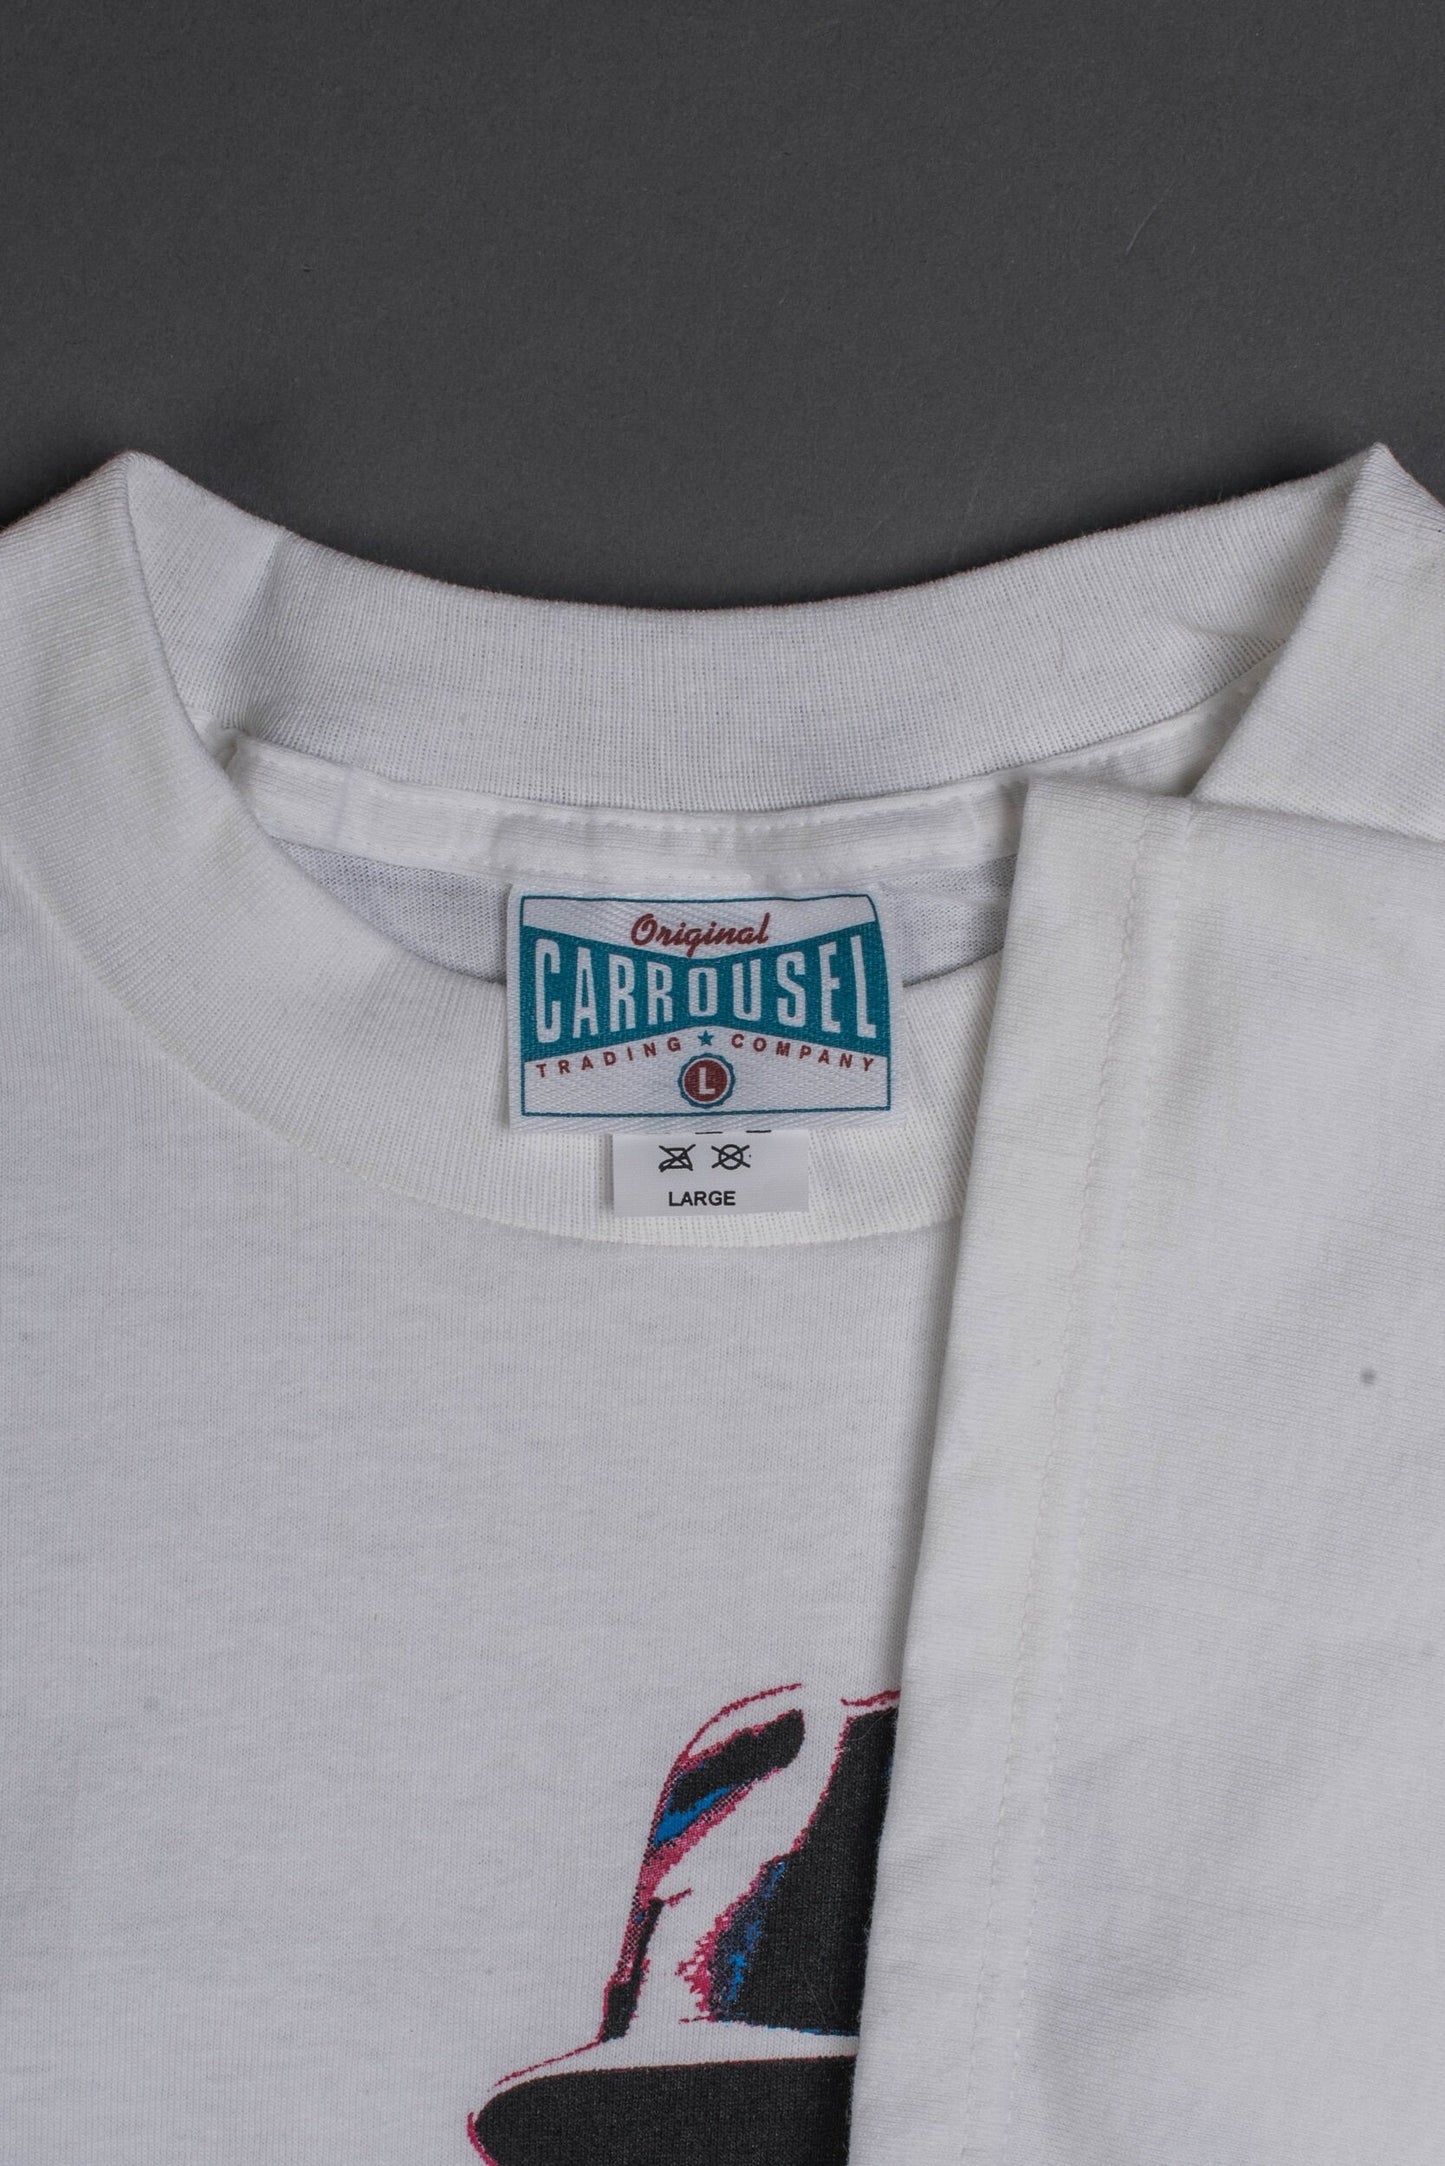 Vintage 90’s William S Burroughs 3-D T-Shirt